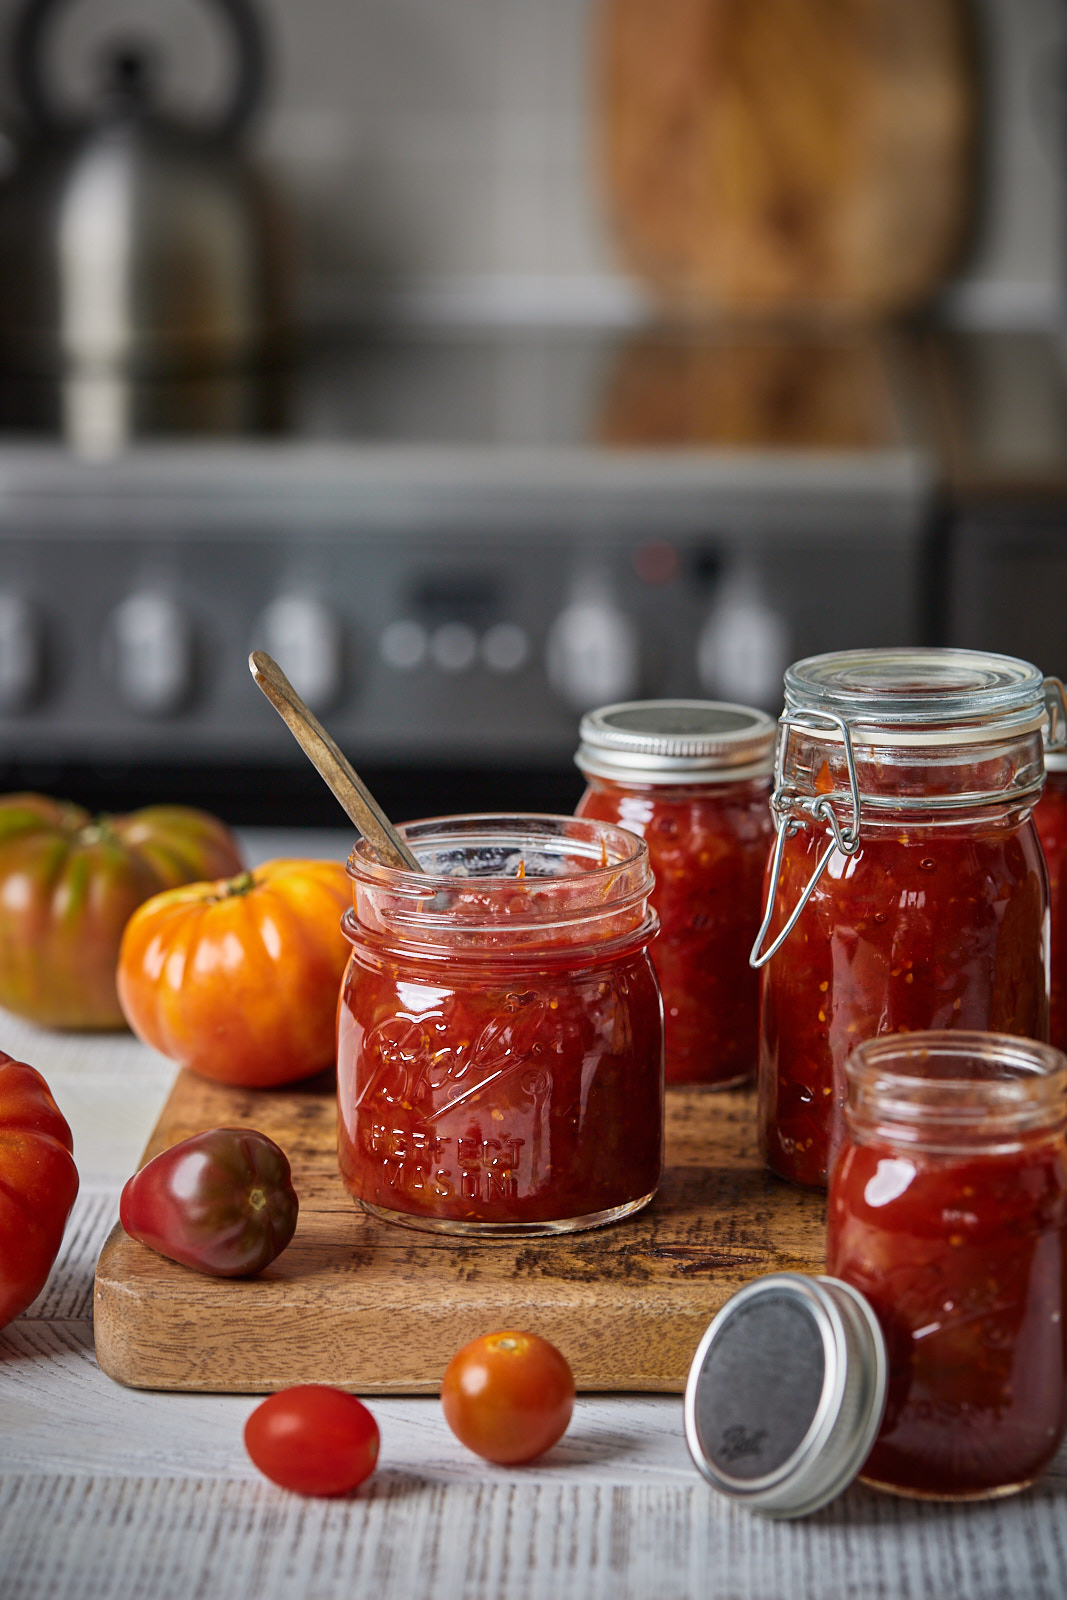 Sweet and Savoury Tomato Jam